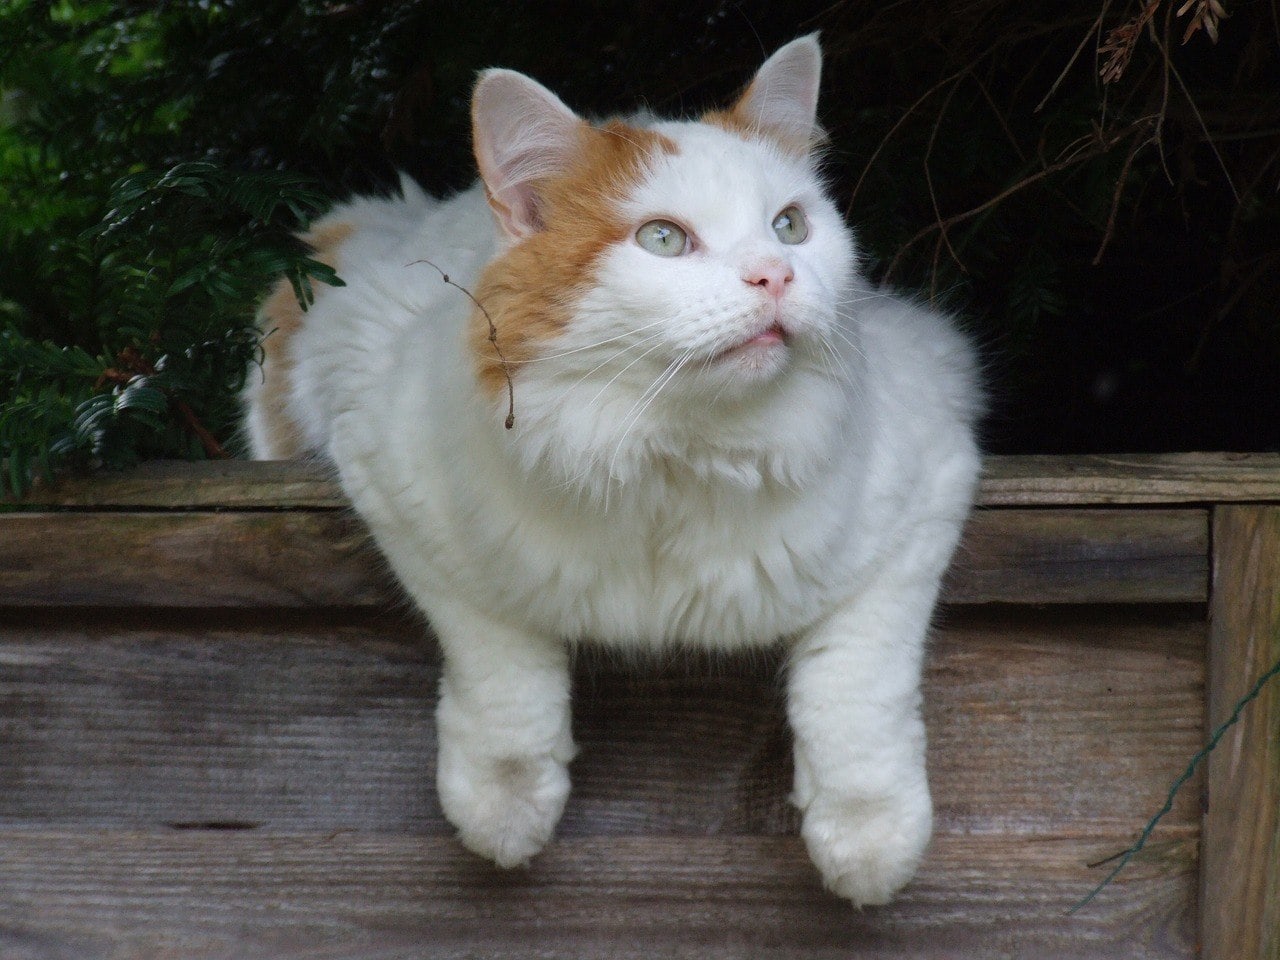  Pet-friendly cat breeds for dogs (2022) Turkish Van_Pixabay